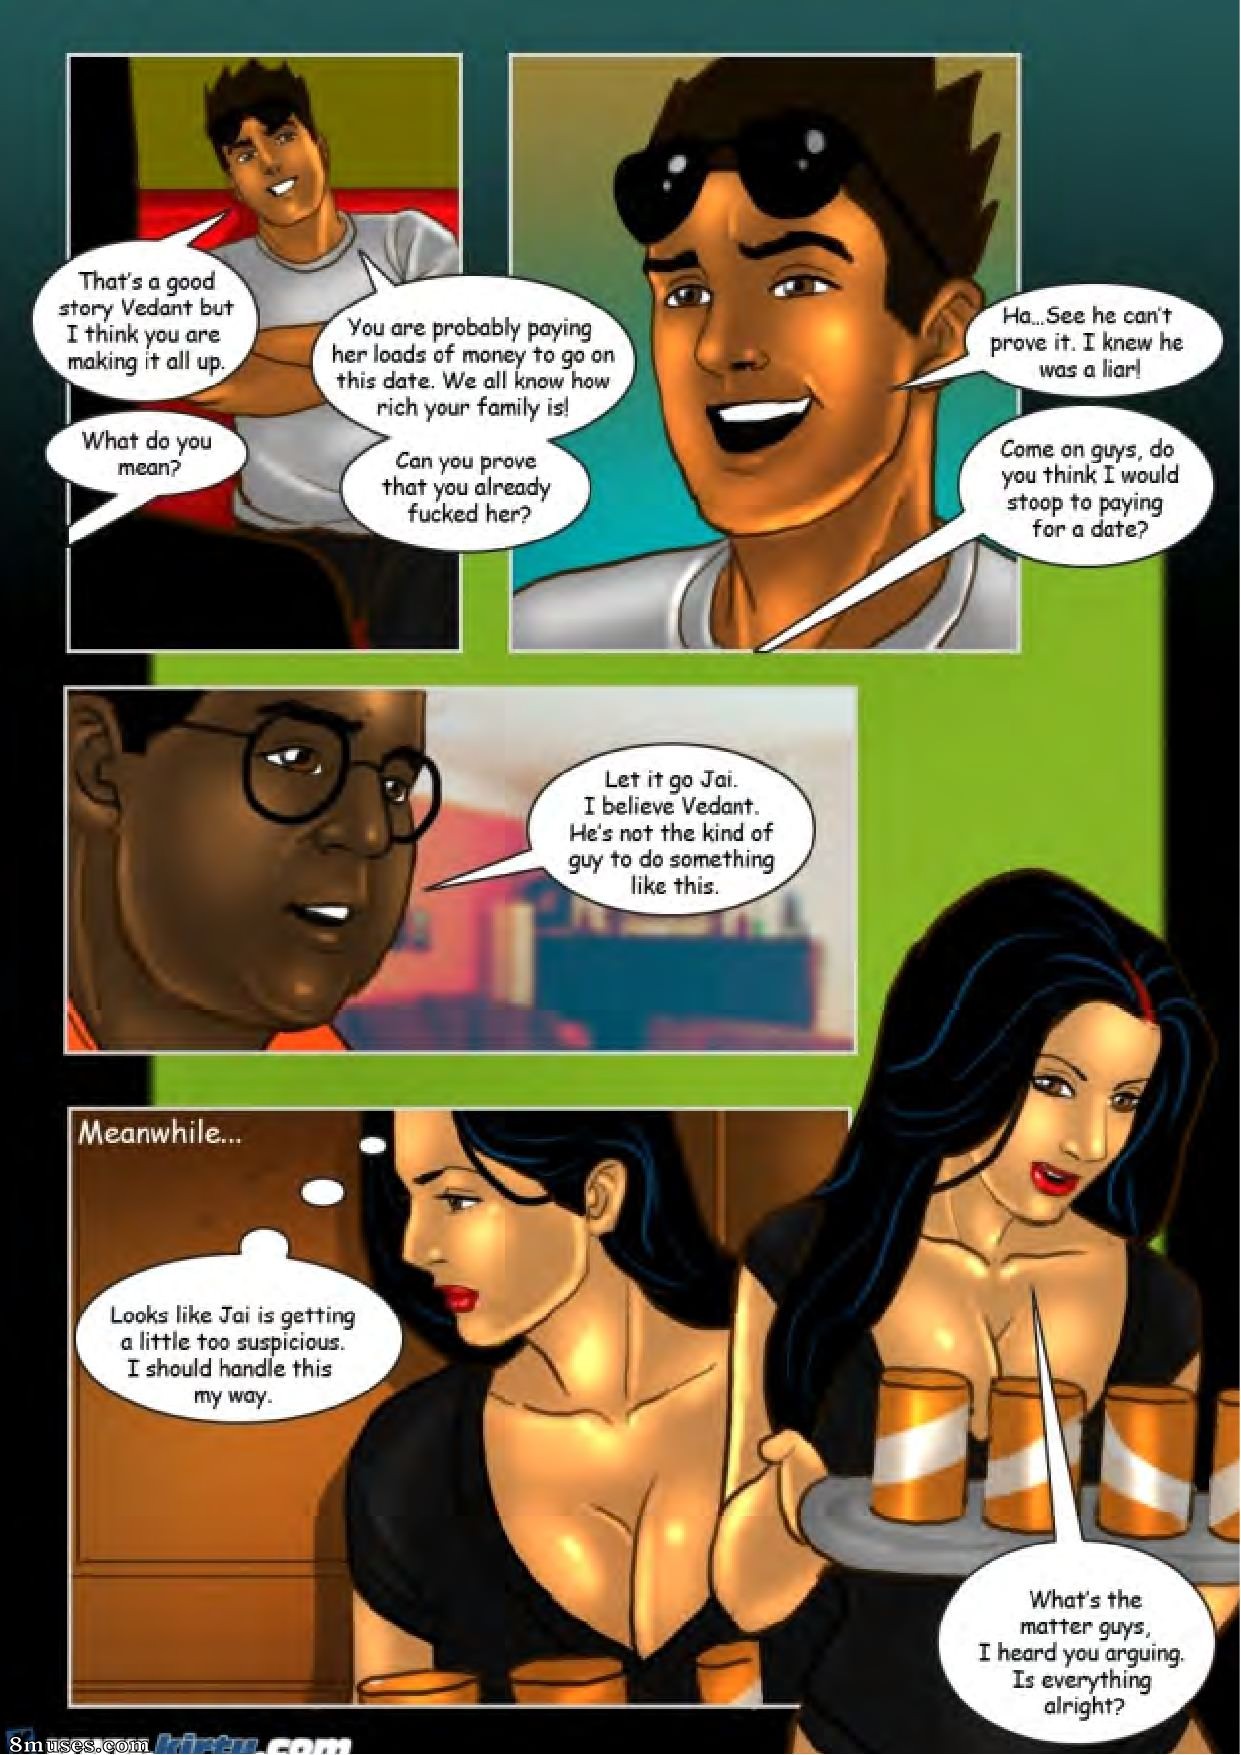 Savita Bhabhi - 8muses Comics- Free Sex Comics and Cartoons Porn.